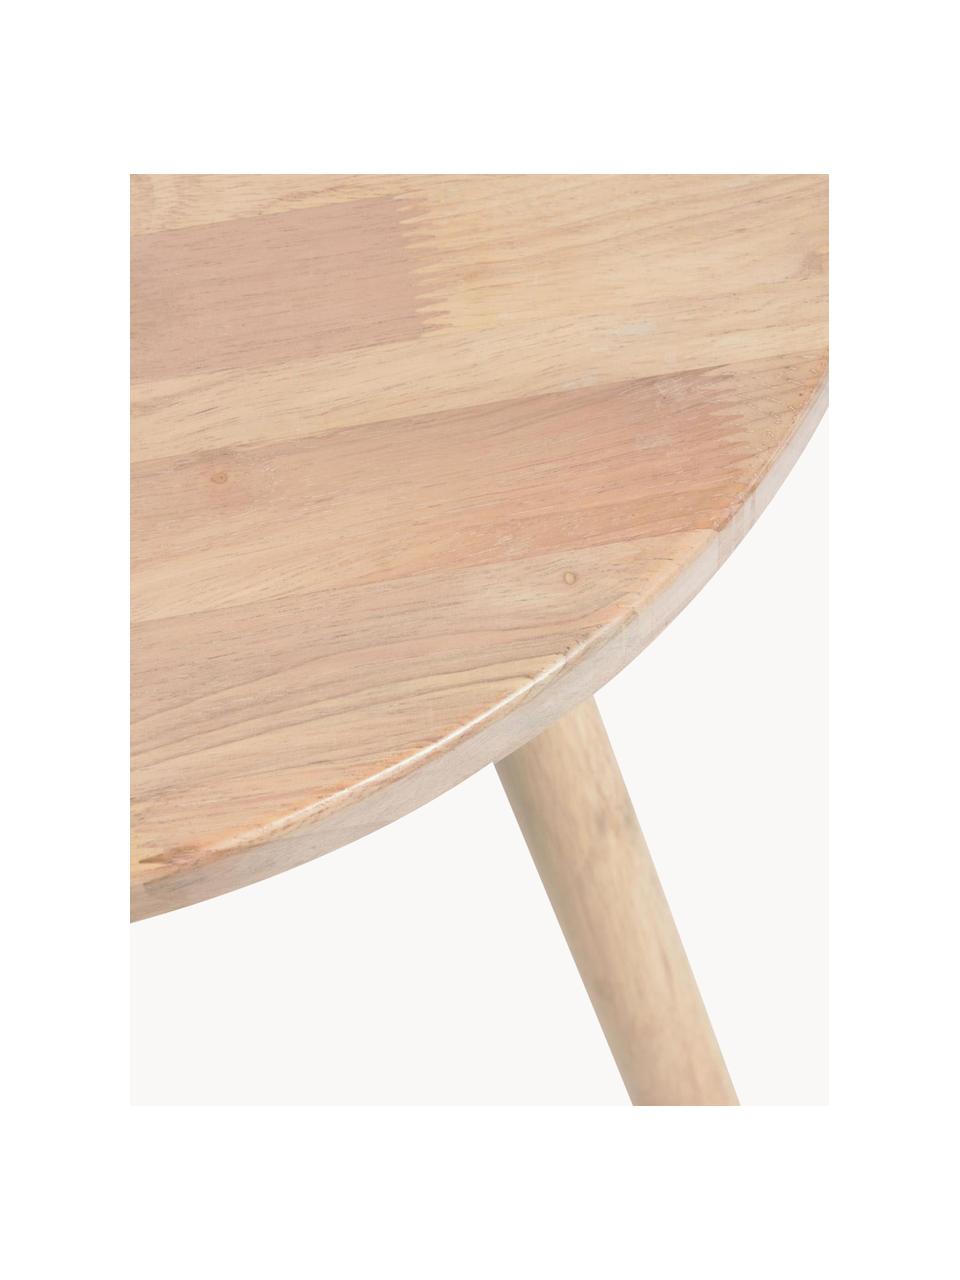 Okrągły stół dla dzieci z drewna kauczukowego Dilcia, Drewno kauczukowe, Drewno kauczukowe, Ø 55 x W 48 cm